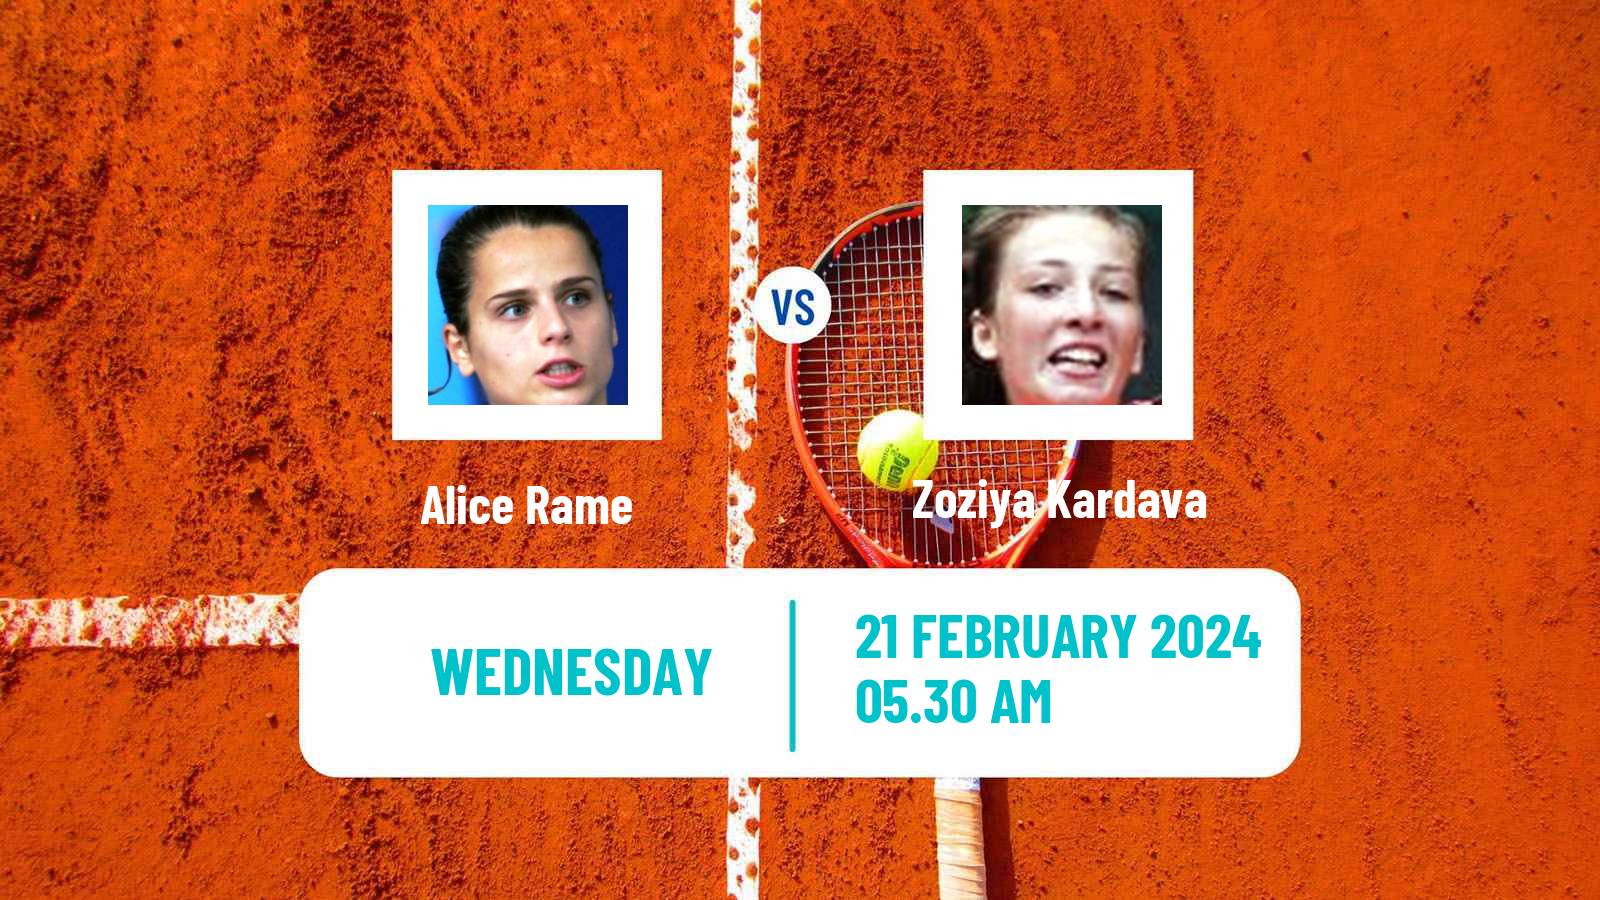 Tennis ITF W35 Antalya 4 Women Alice Rame - Zoziya Kardava